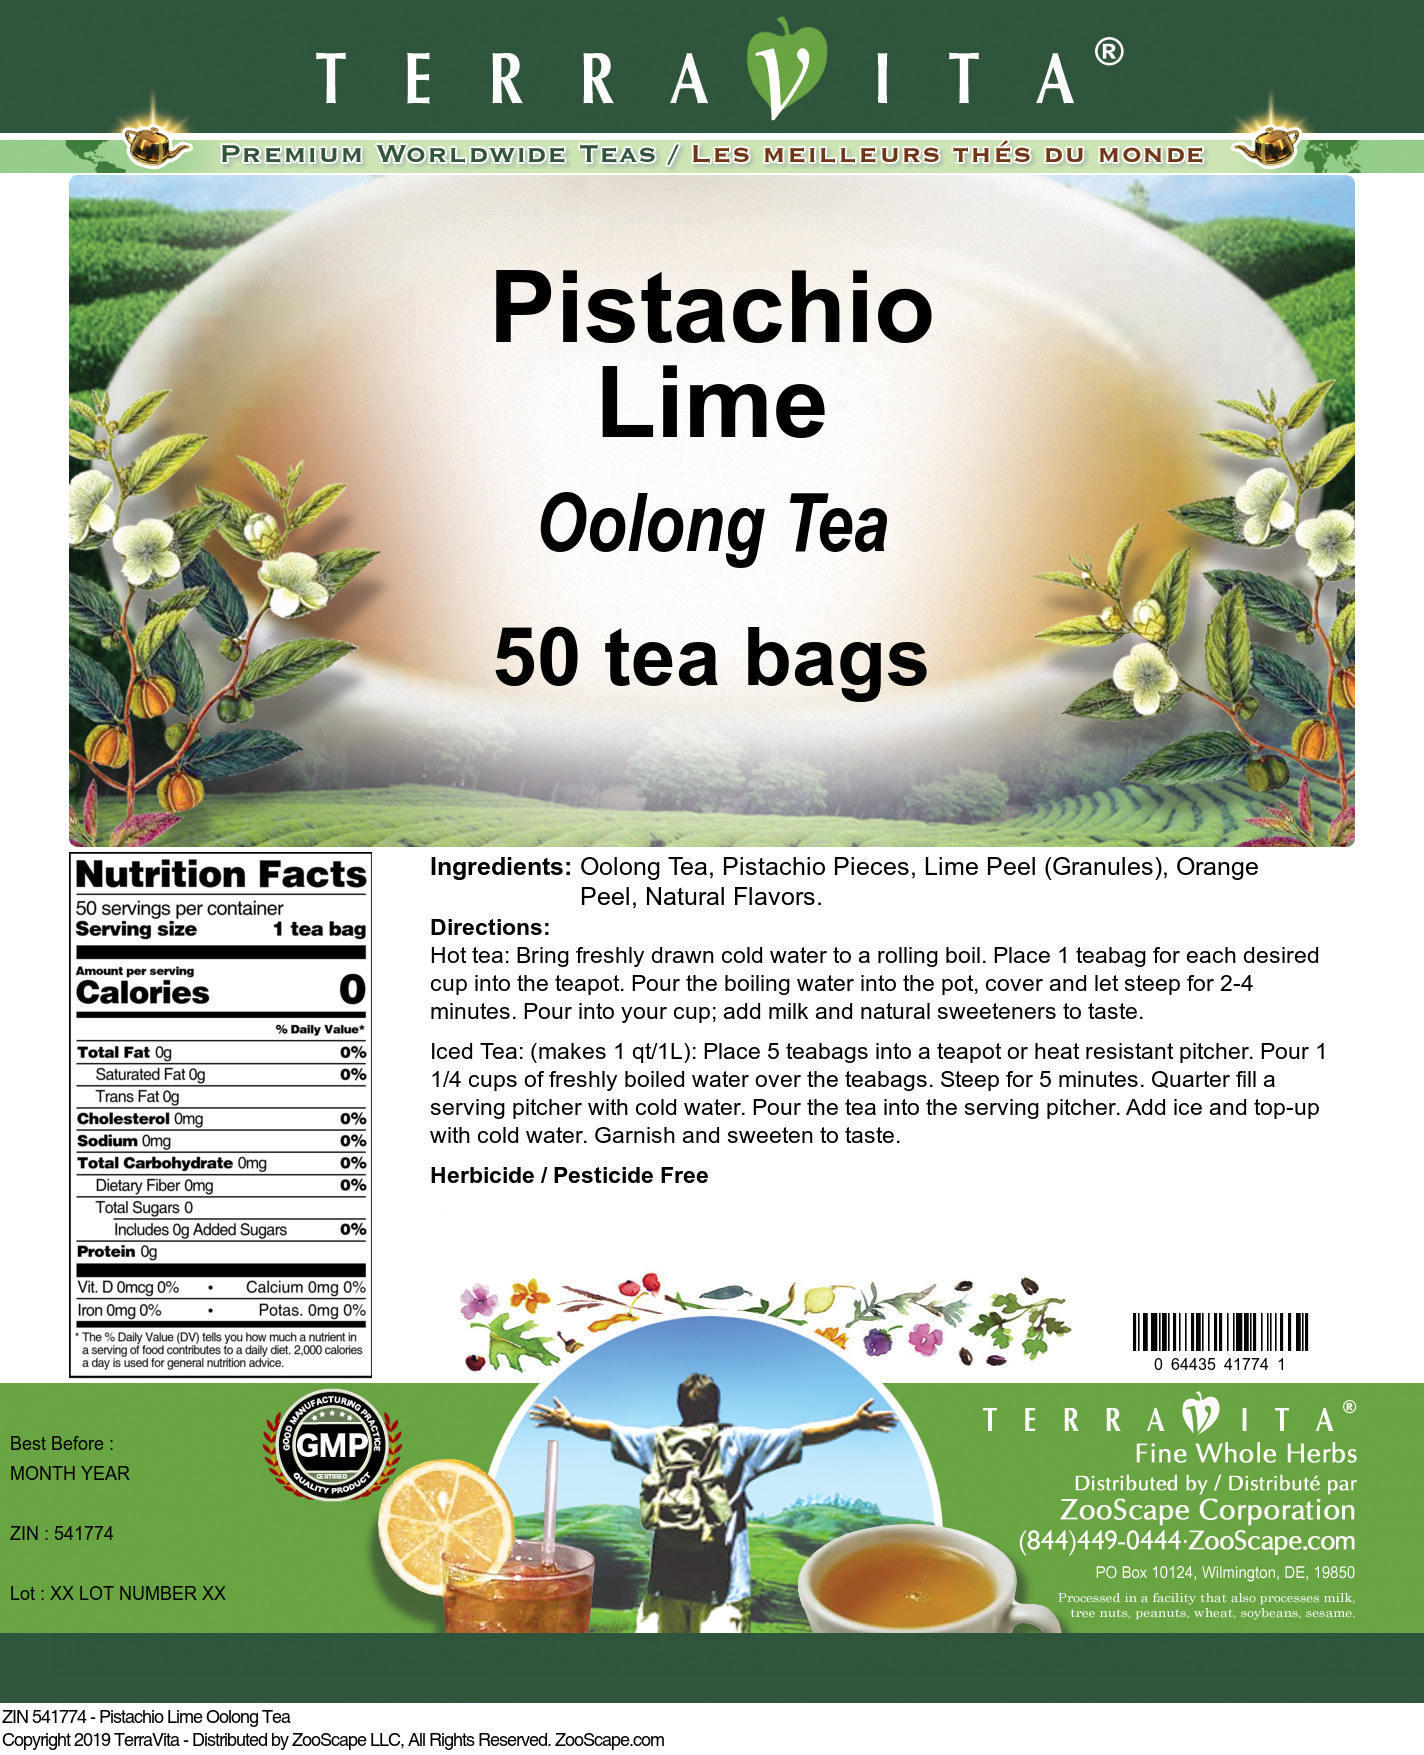 Pistachio Lime Oolong Tea - Label